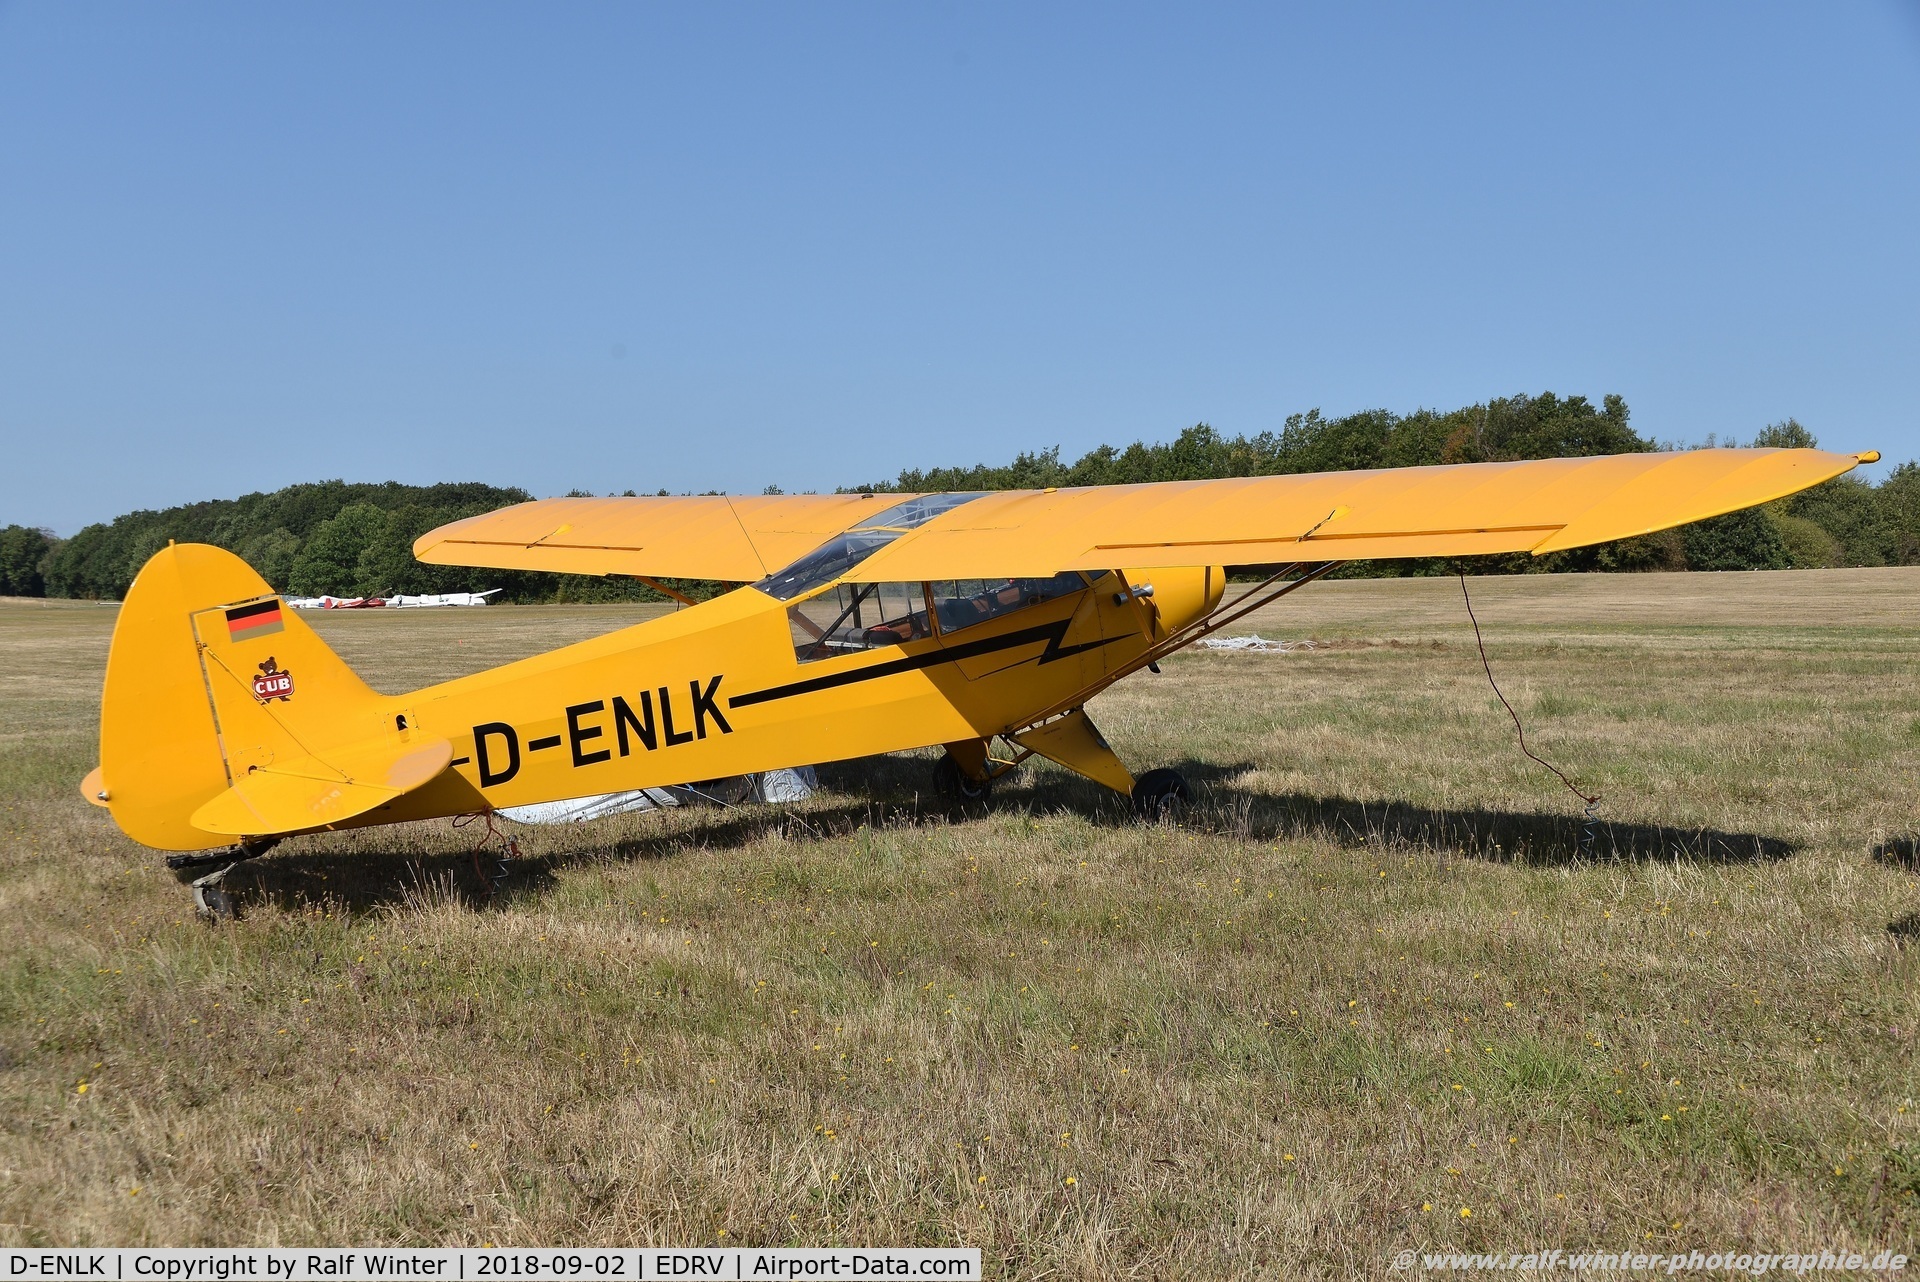 D-ENLK, 1951 Piper L-18C Super Cub C/N 18-1556, Piper PA-18-95 Super Cub - Private - 18-1556 - D-ENLK - 02.09.2018 - EDRV